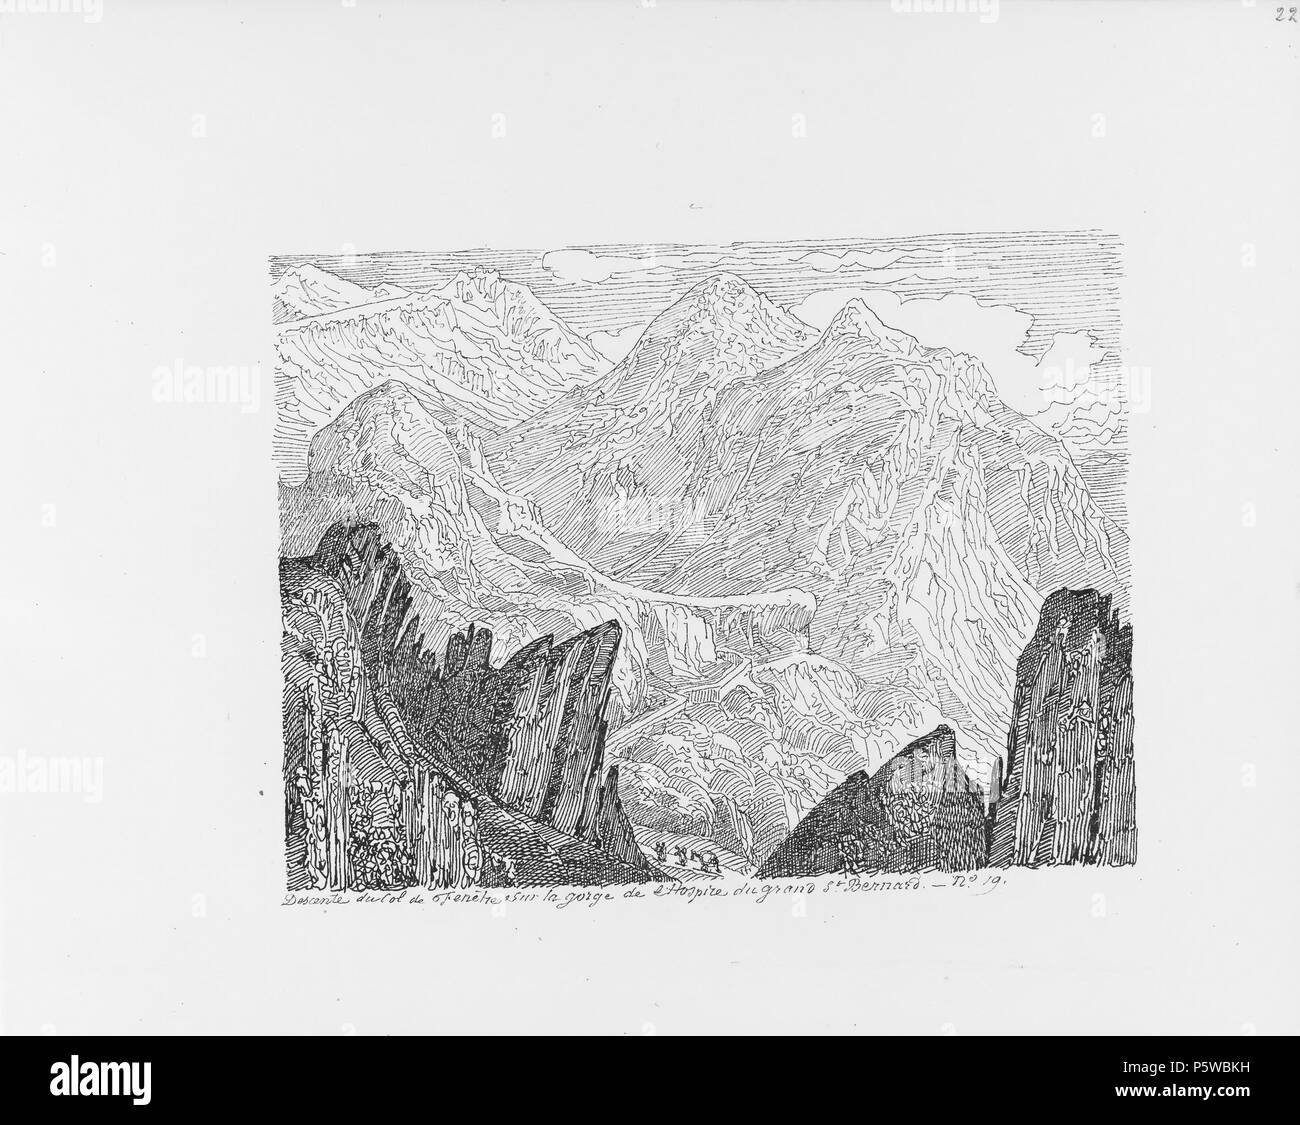 322 CH-NB-Voyage autour du Mont-Blanc dans les vallées d'Hérens de Zermatt et au Grimsel 1843-nbdig-19161-021 Stock Photo